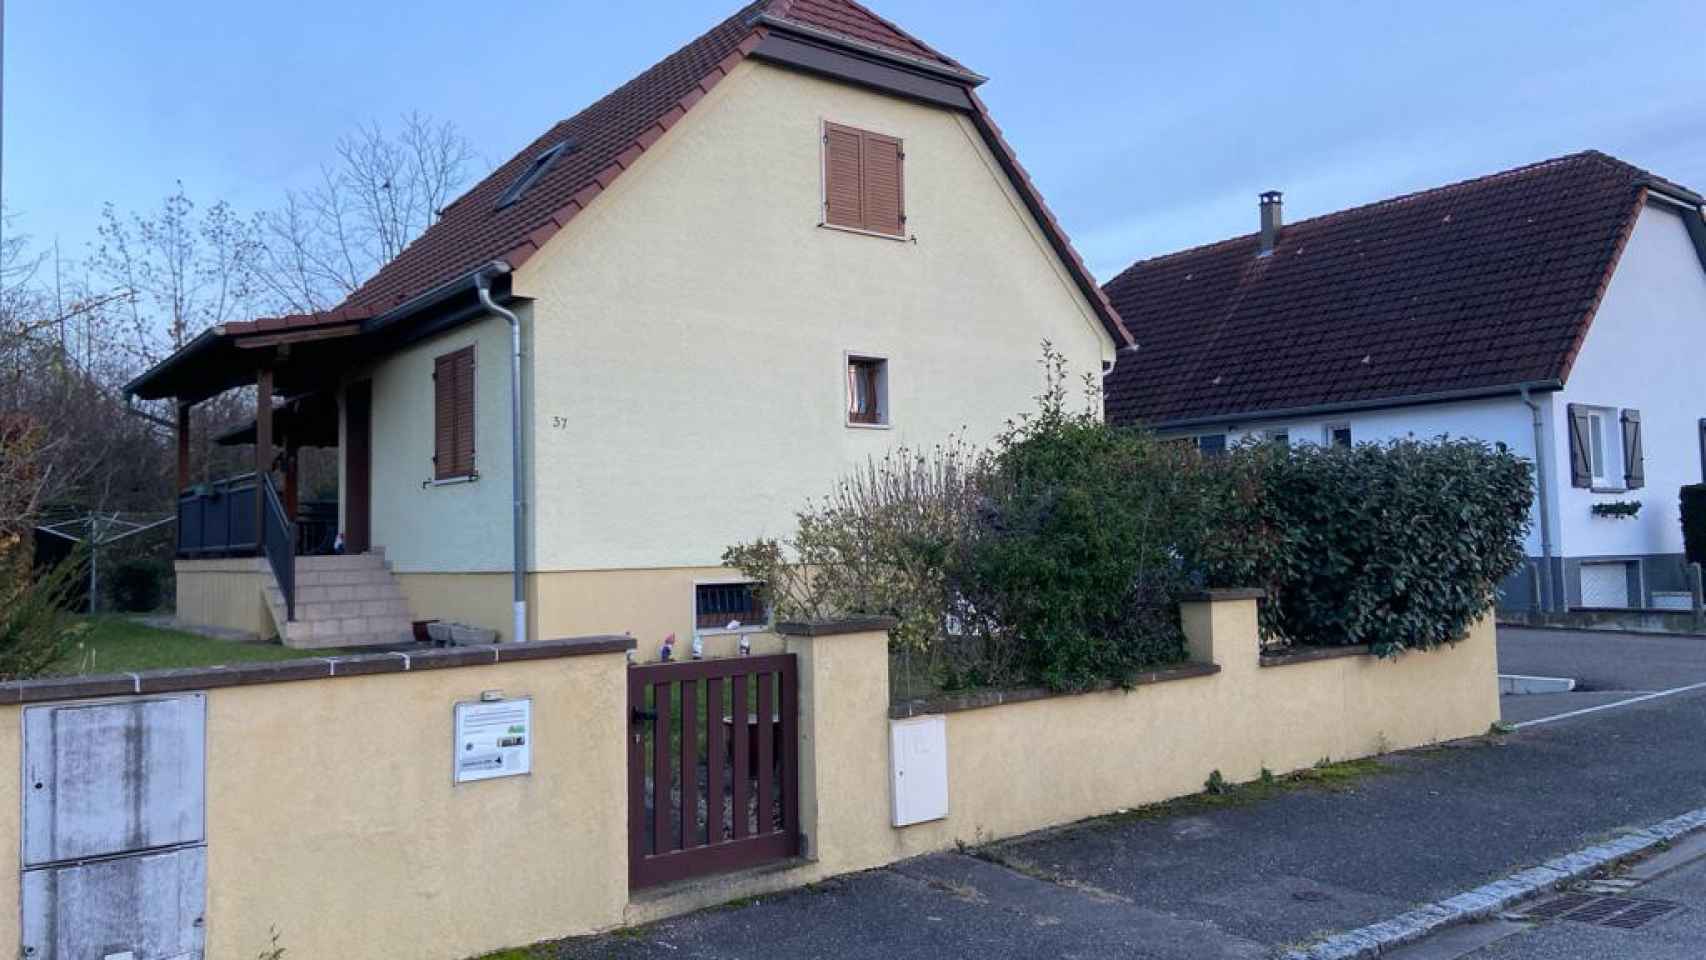 Residencia de la familia Scherzinger en Ruelisheim